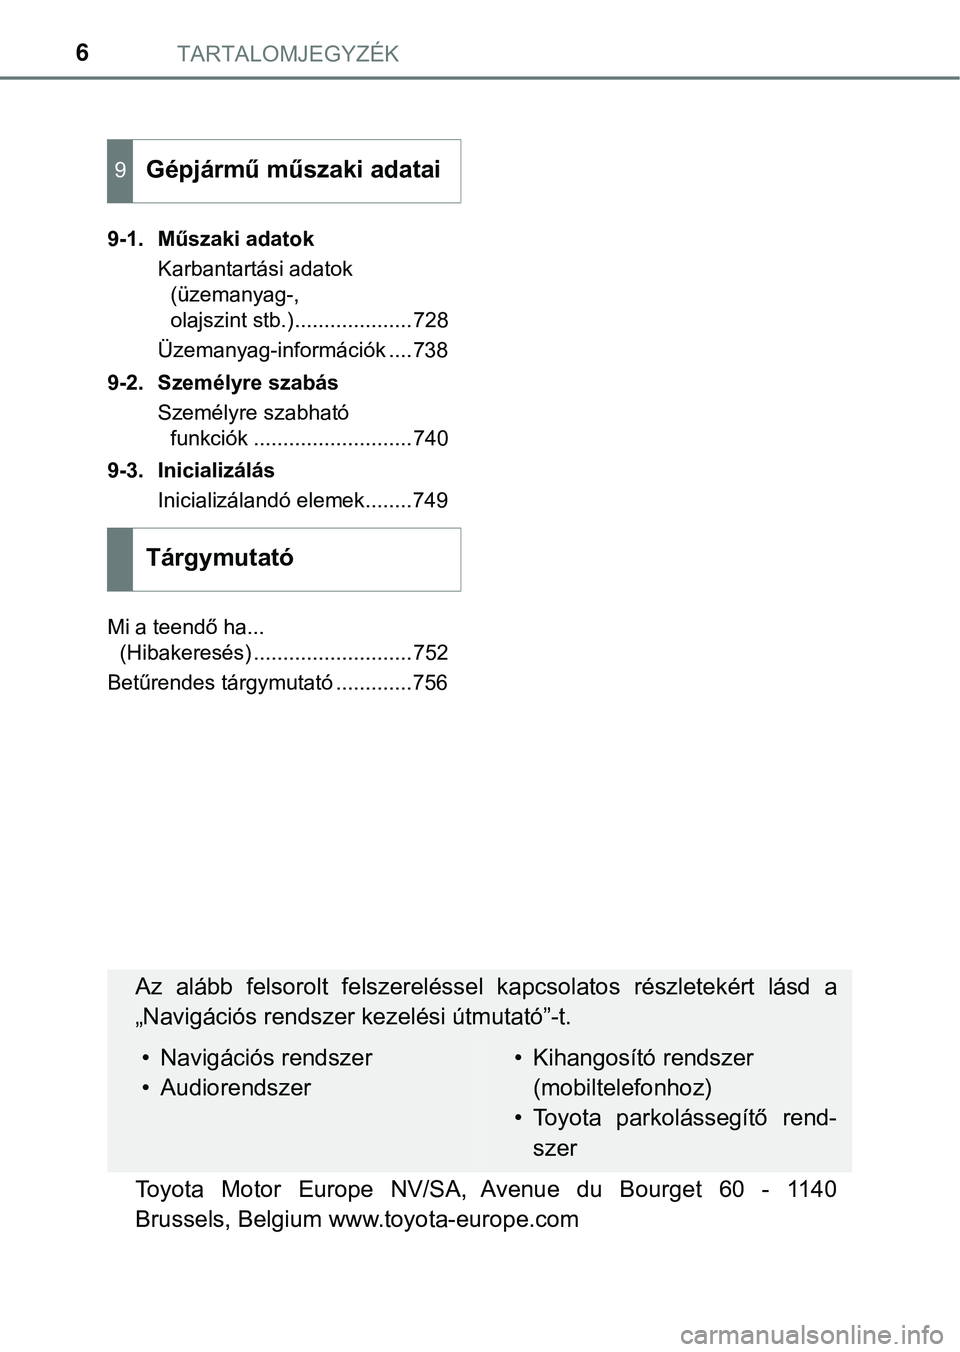 TOYOTA PRIUS PLUG-IN HYBRID 2018  Kezelési útmutató (in Hungarian) TARTALOMJEGYZÉK6
9-1. Műszaki adatokKarbantartási adatok (üzemanyag-, 
olajszint stb.)....................728
Üzemanyag-információk ....738
9-2. Személyre szabás Személyre szabható funkció